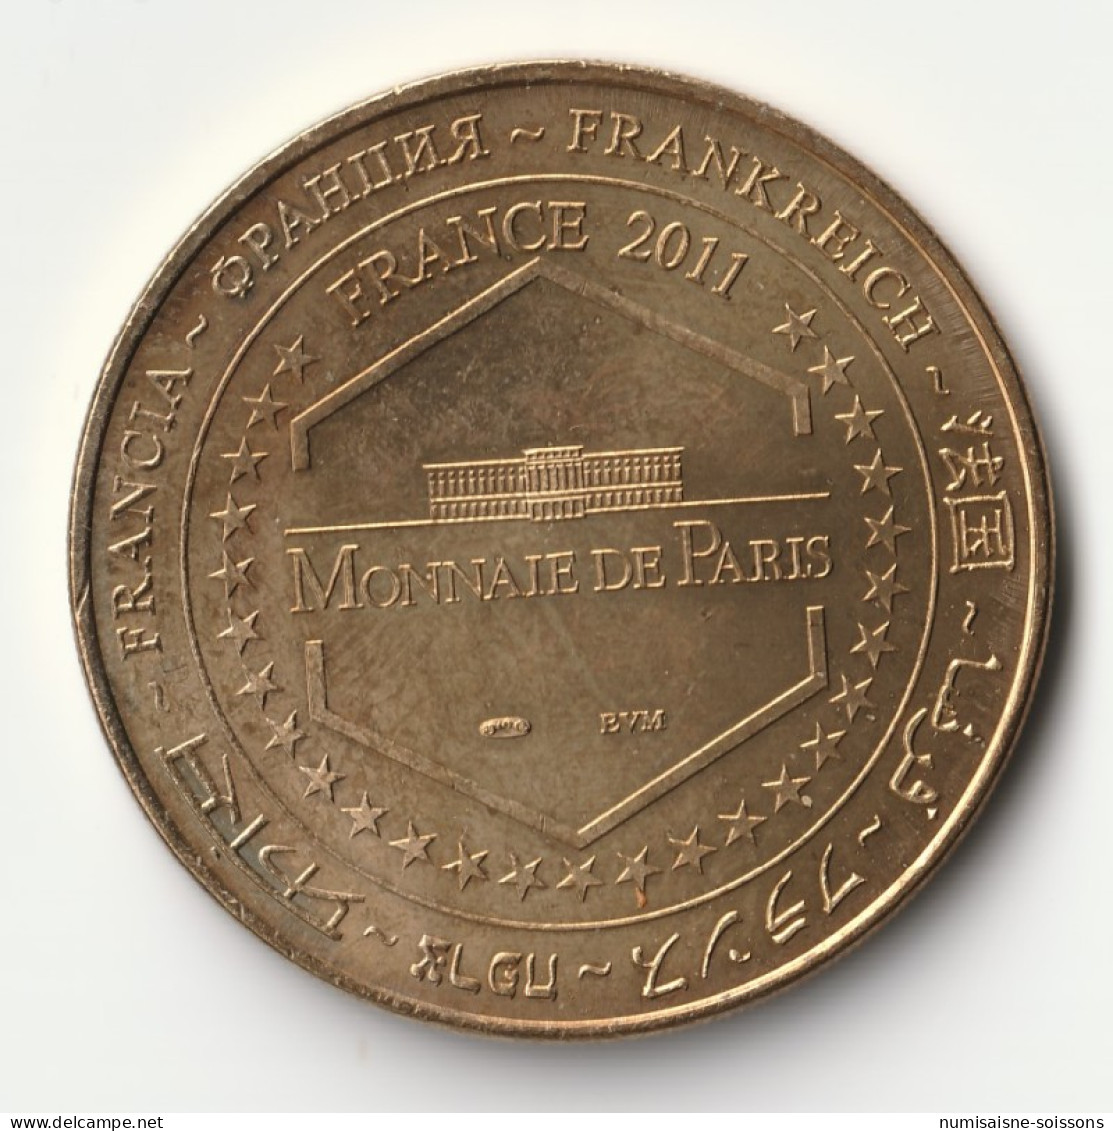 60 - CHANTILLY - CHATEAU - MUSEE VIVANT DU CHEVAL - Monnaie De Paris - 2011 - 2011